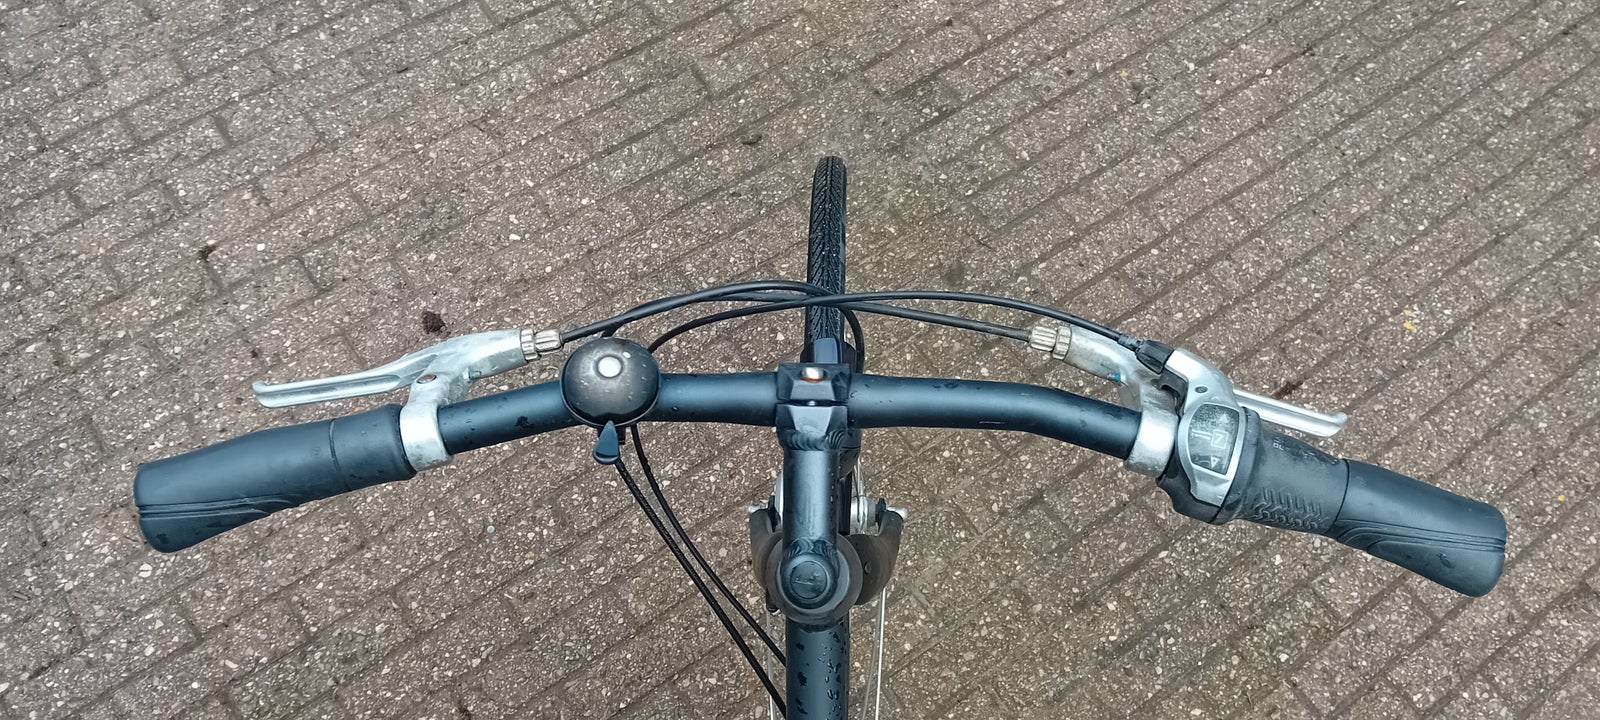 Damecykel, Kildemoes, City bike